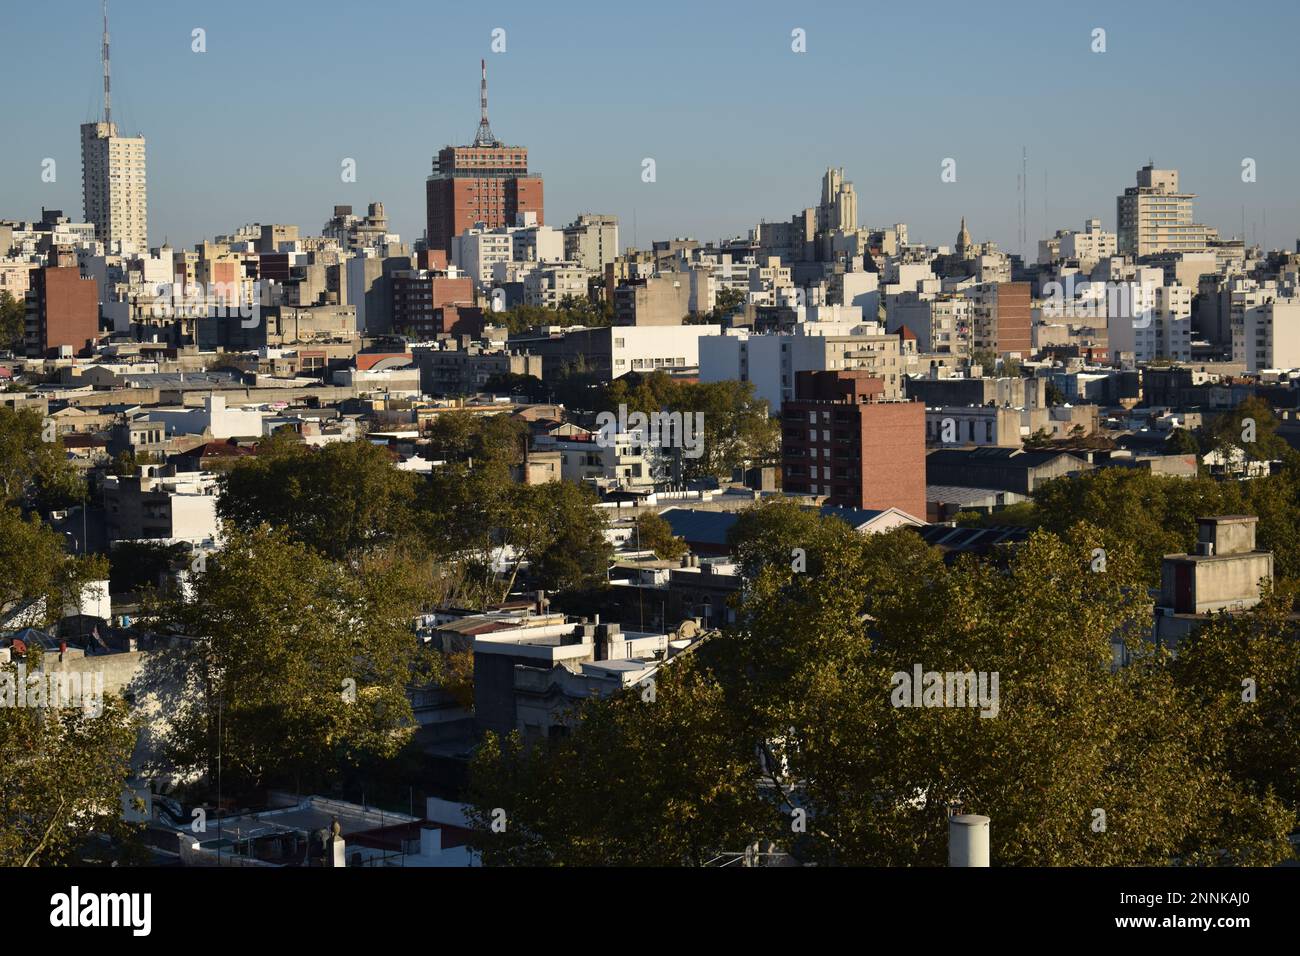 Fotografía aérea de la ciudad de Montevideo. Stock Photo